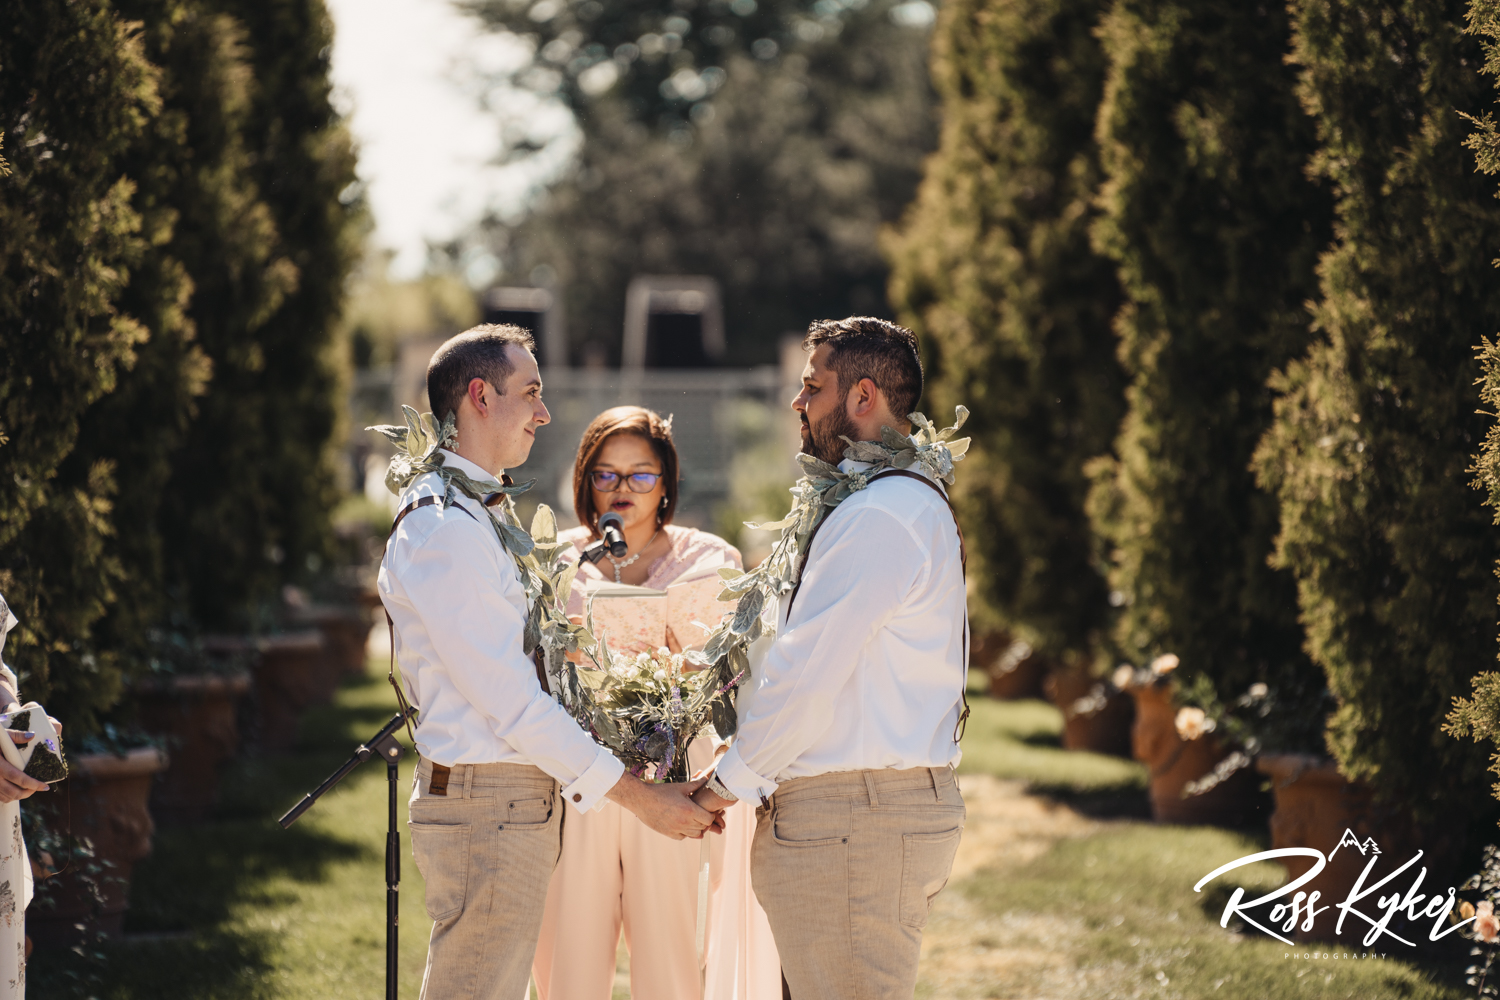 Denver Botanic Gardens Wedding | Denver, Colorado photographer